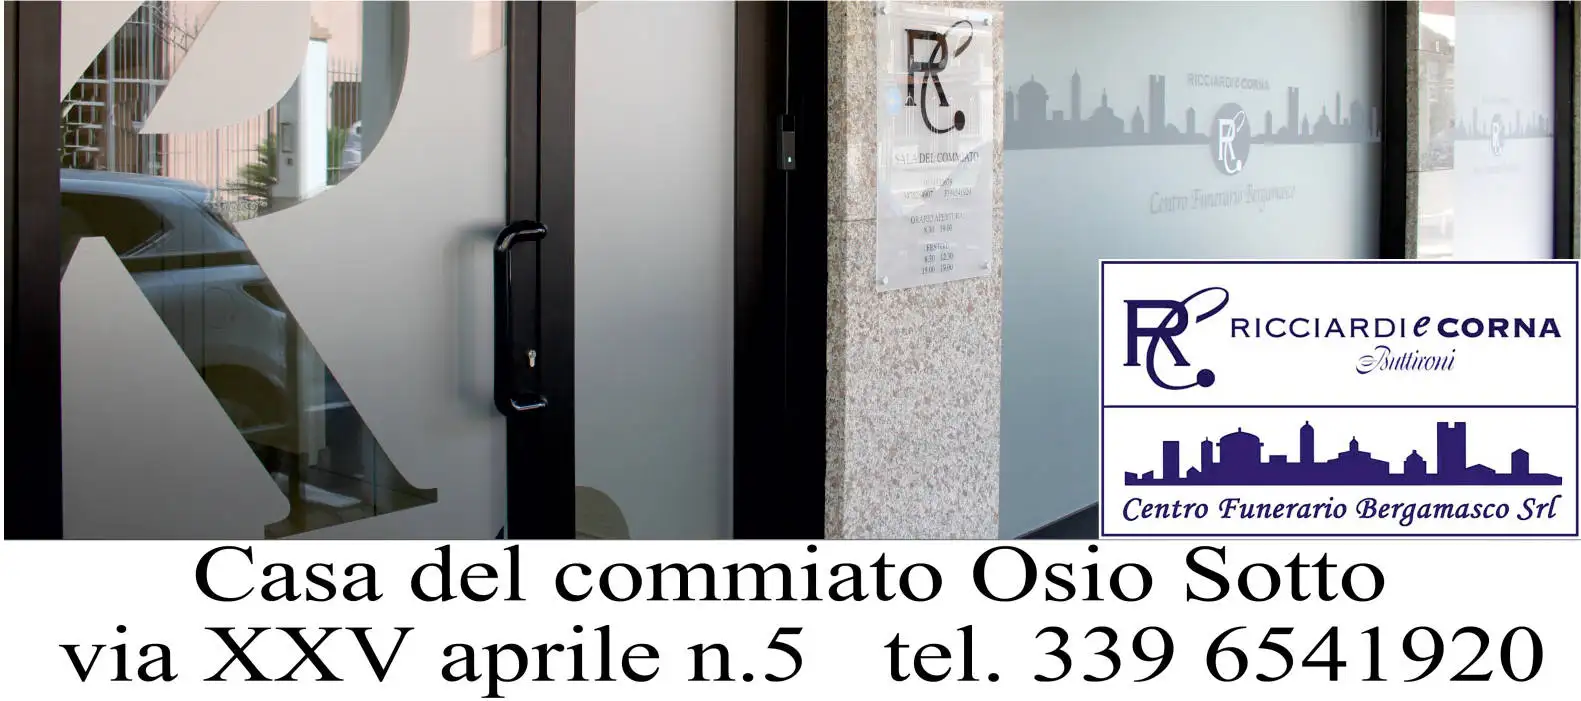 Osio Sotto (BG) - Ricciardi & Corna Casa del commiato